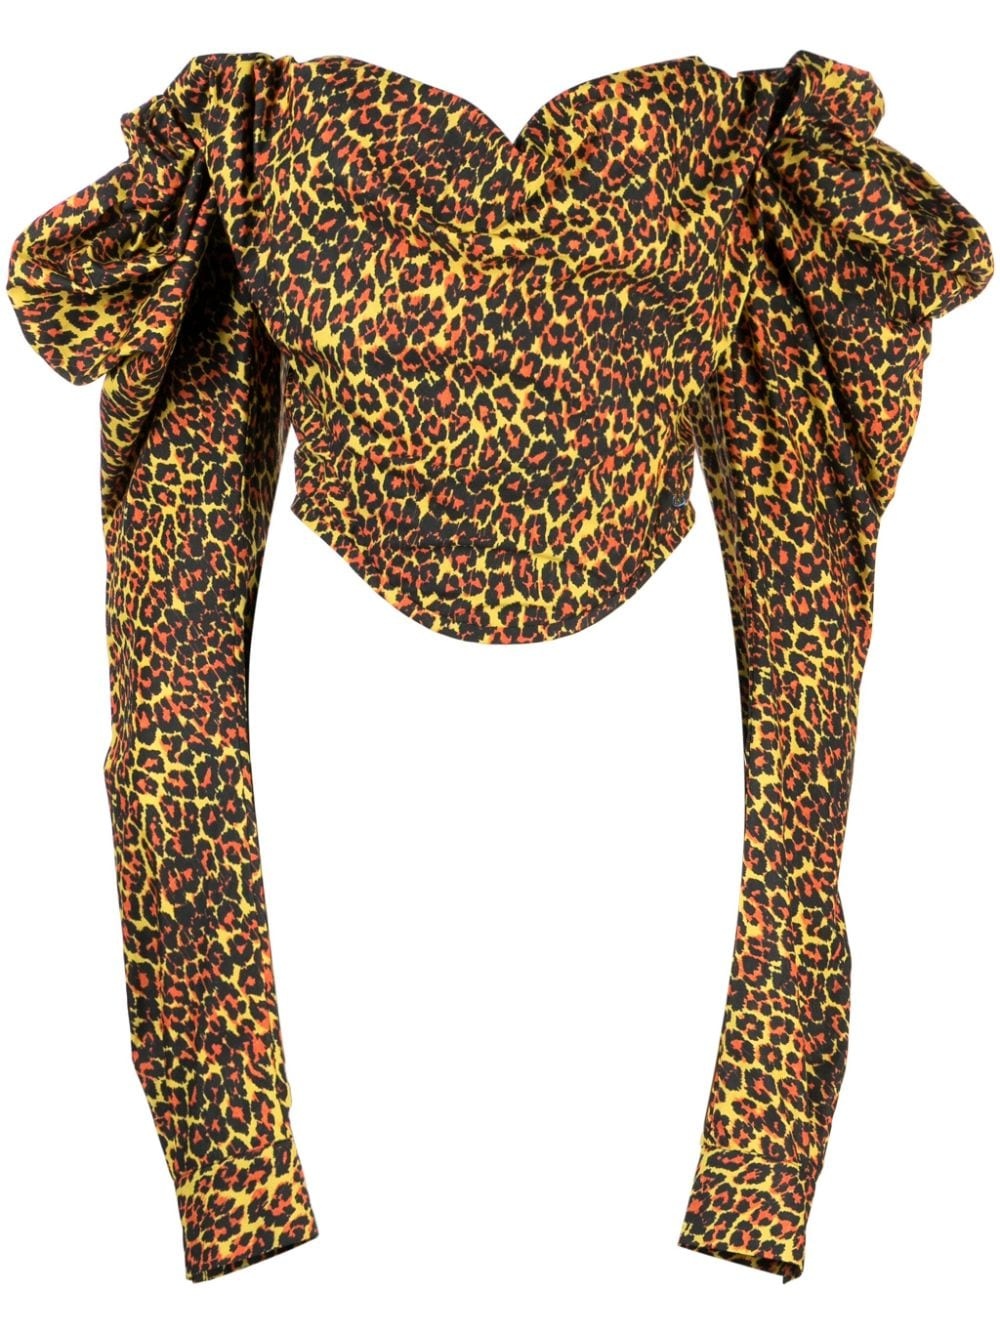 leopard-print corset top - 1